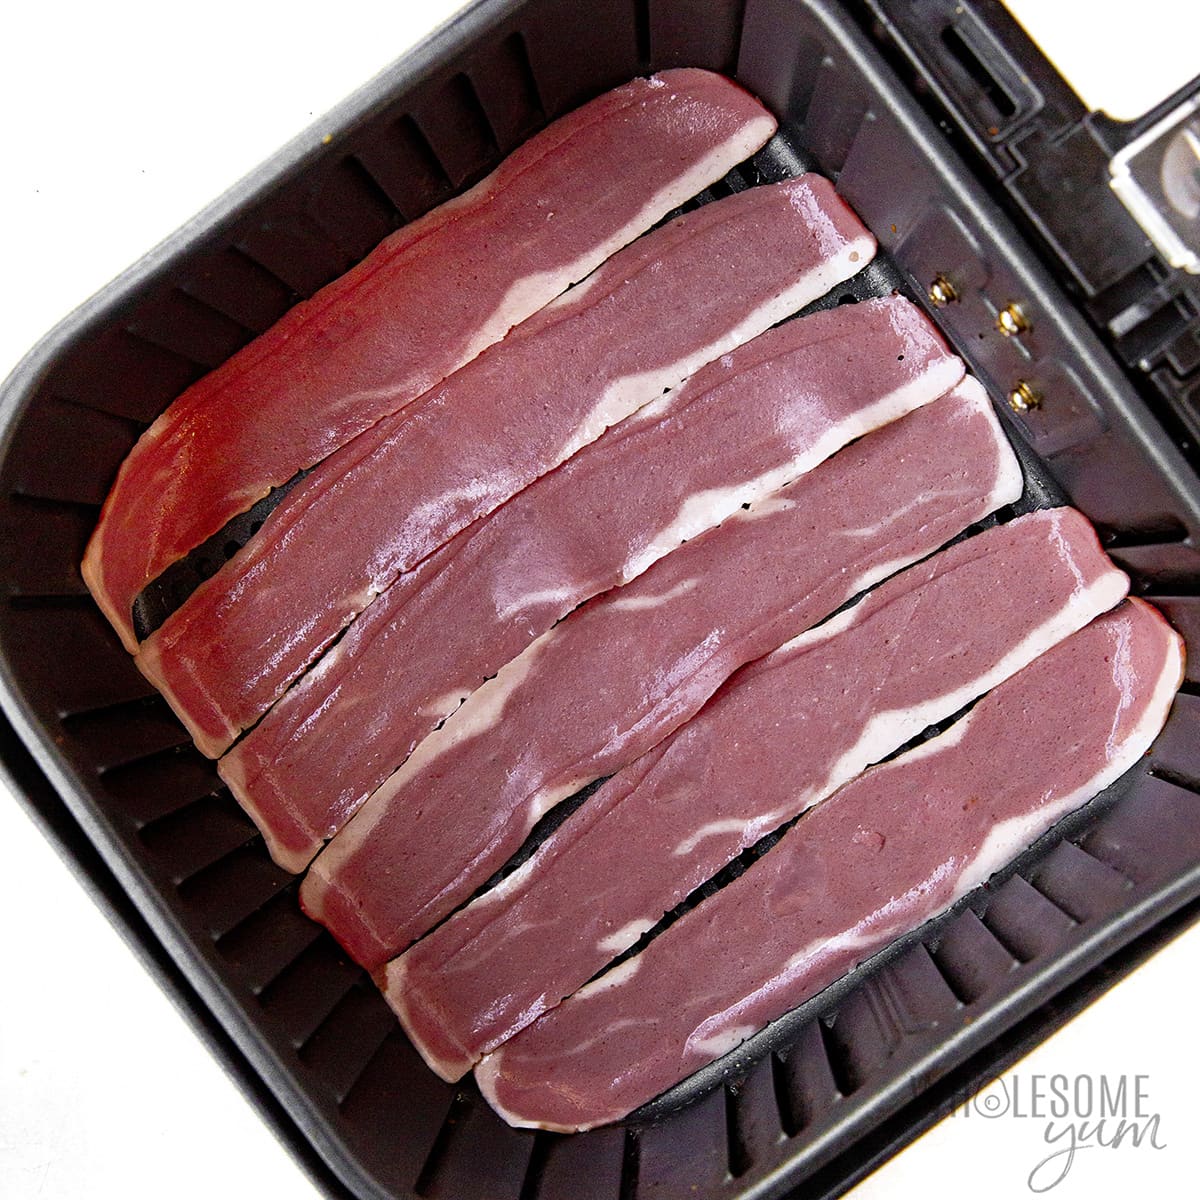 Raw turkey bacon in a fryer basket.